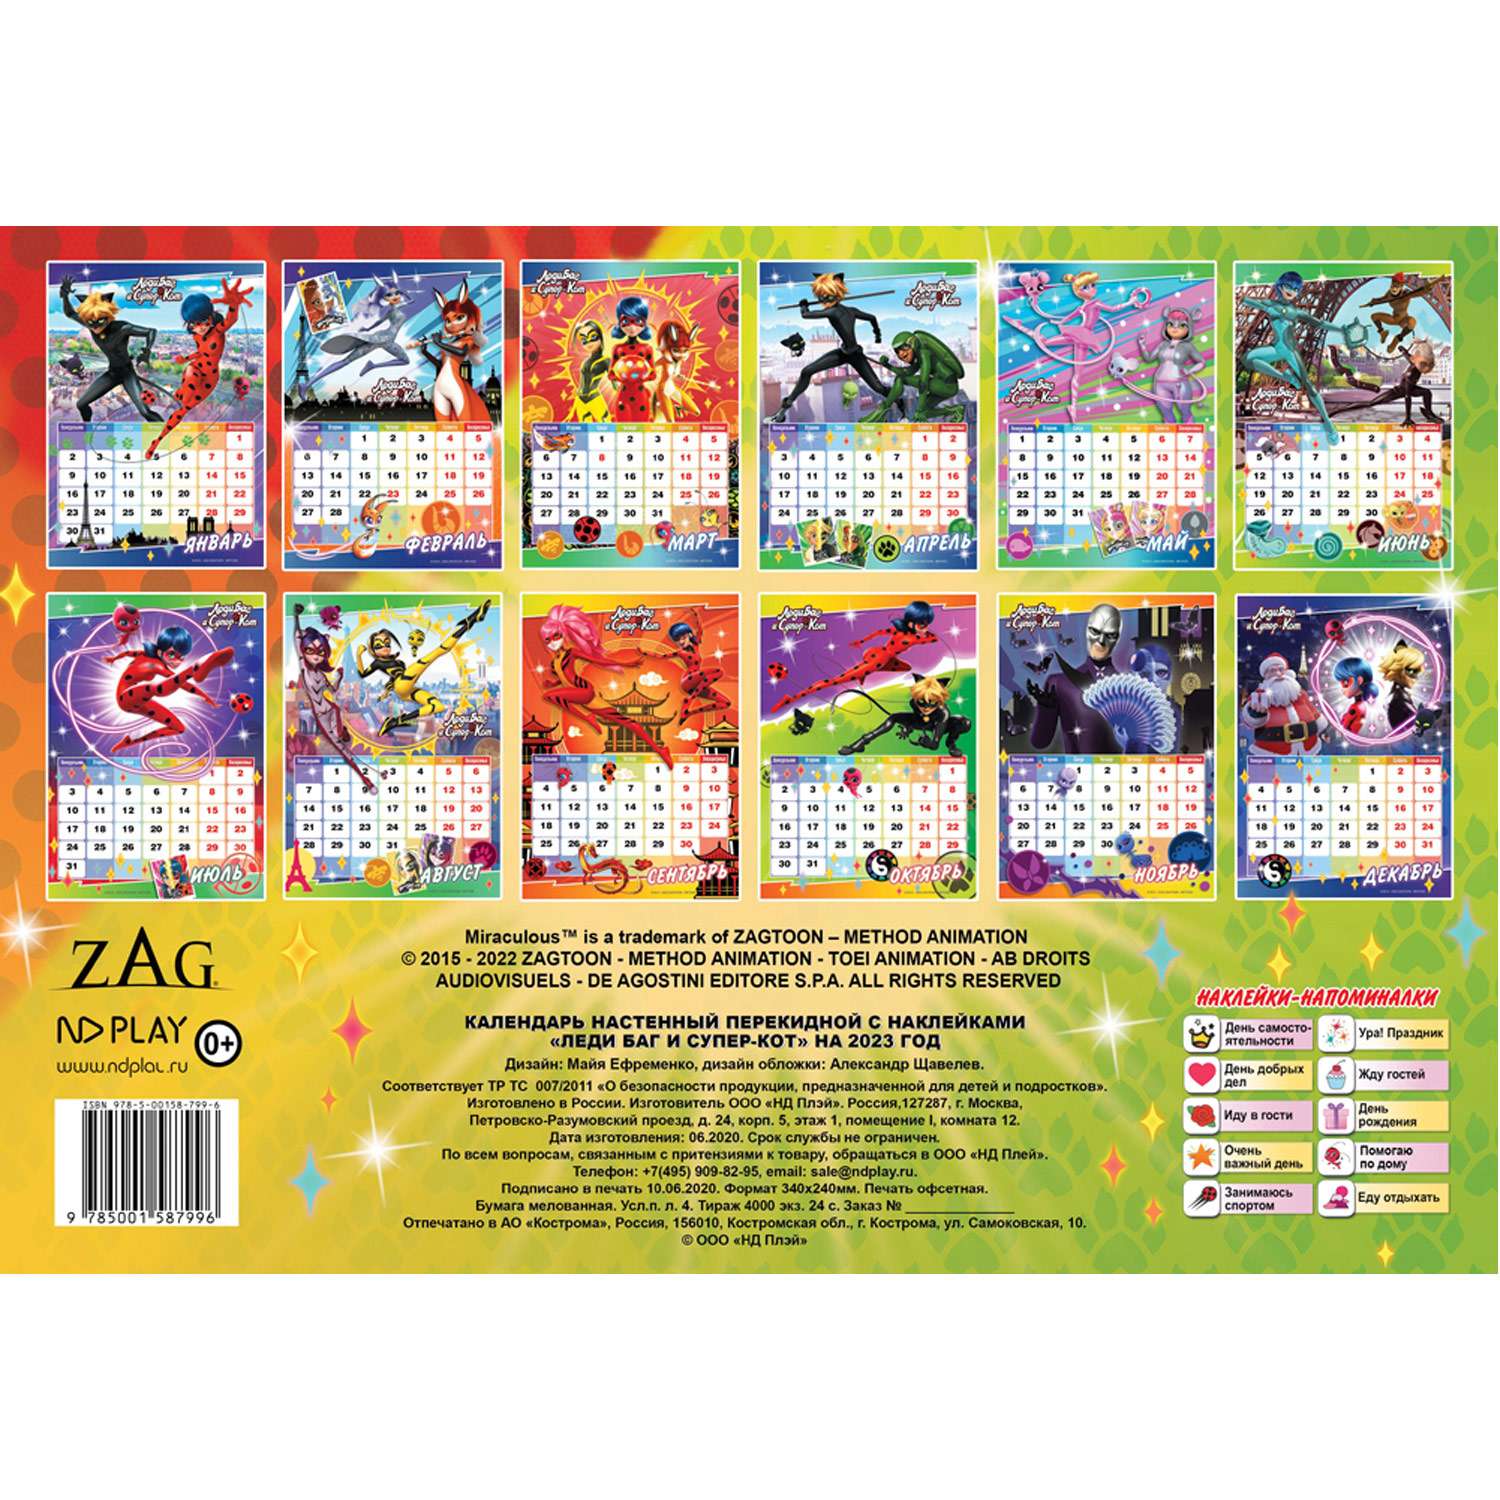 Календарь настенный перекидной ND PLAY Леди Баг и Супер Кот с наклейками на 2023 год - фото 5